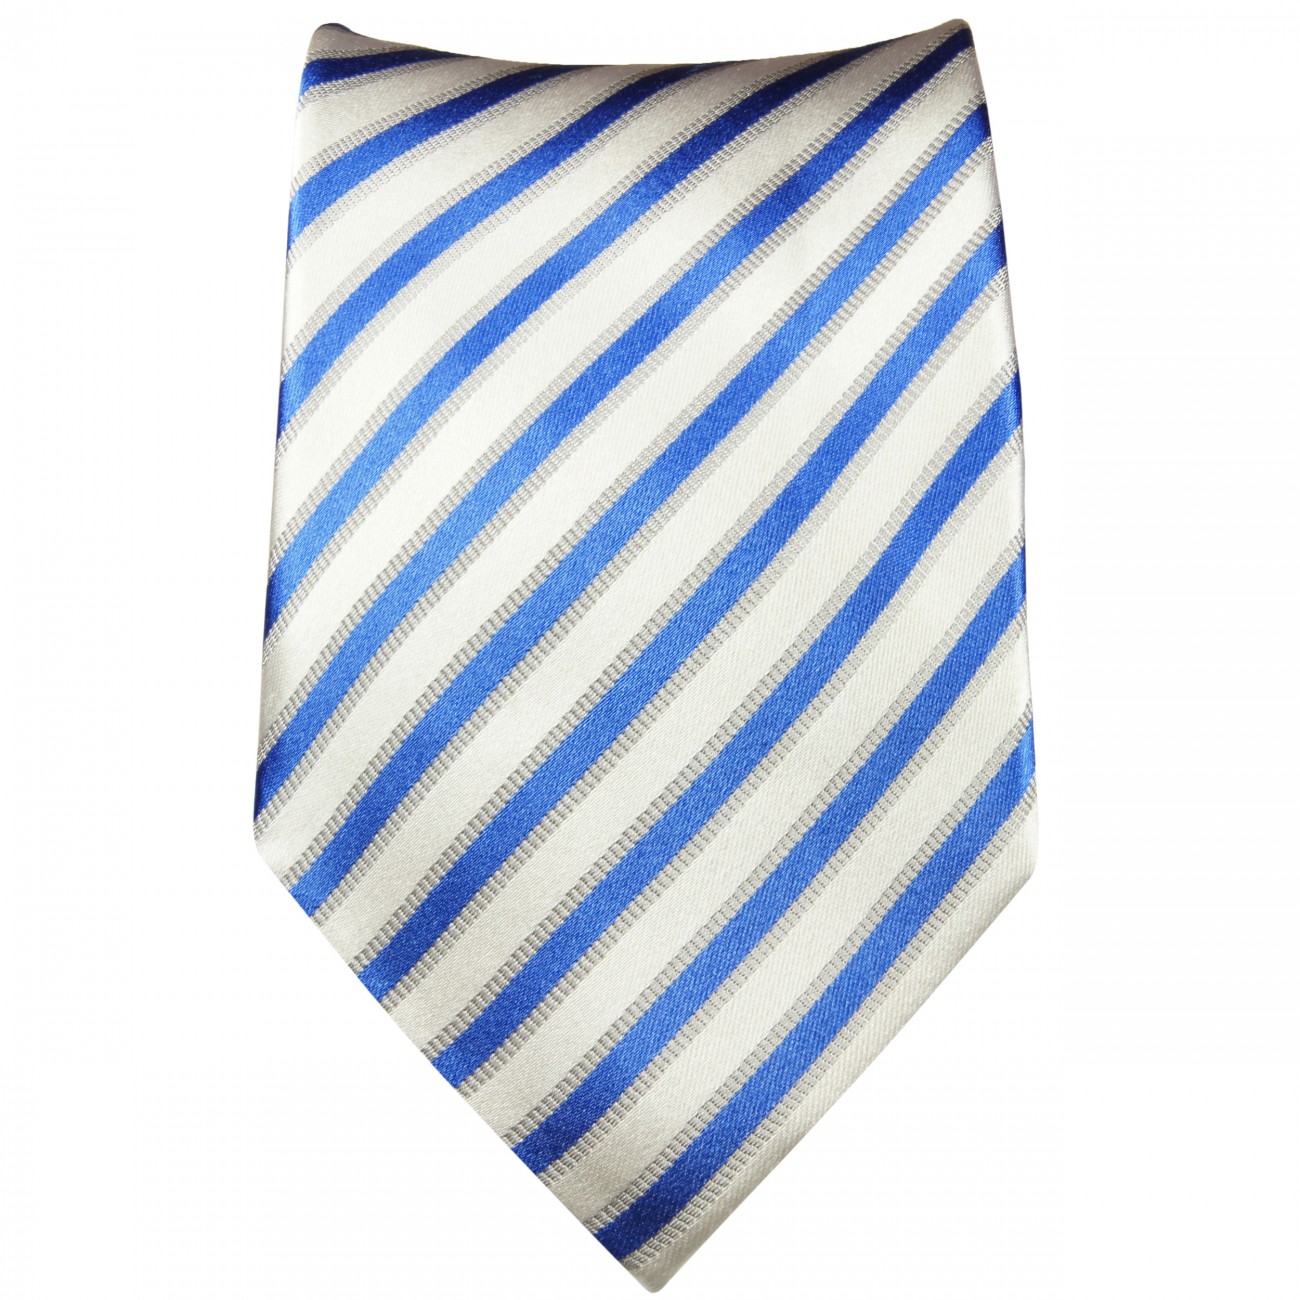 Krawatte blau weiß gestreift Seide 685